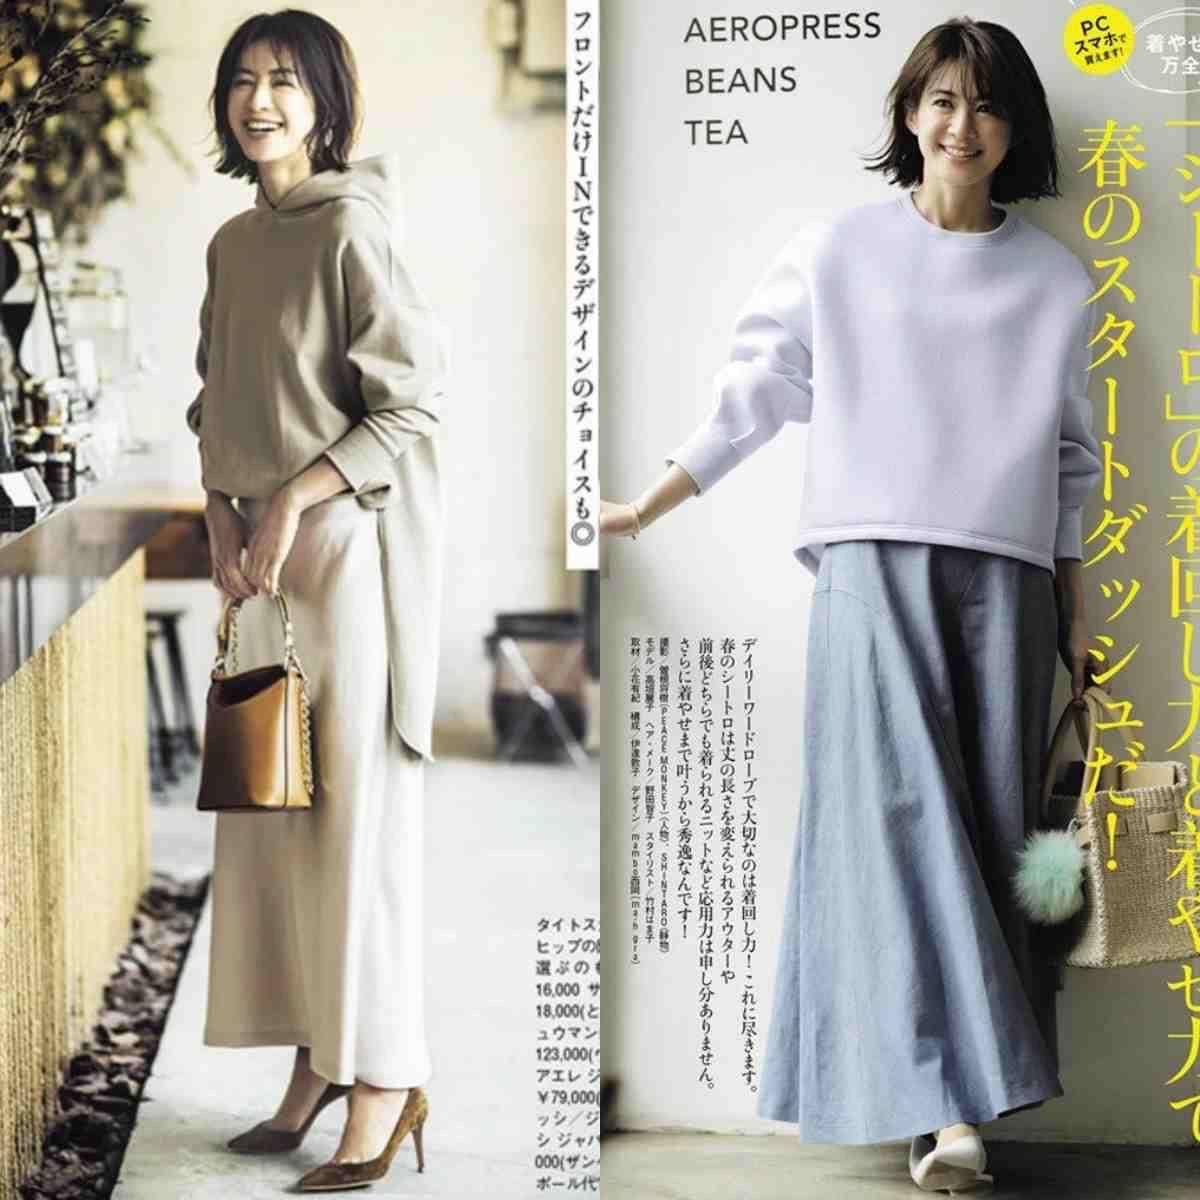 日本女性的“穿毛衣”让我惊叹，回头率高还很时尚，很洋气很减龄。